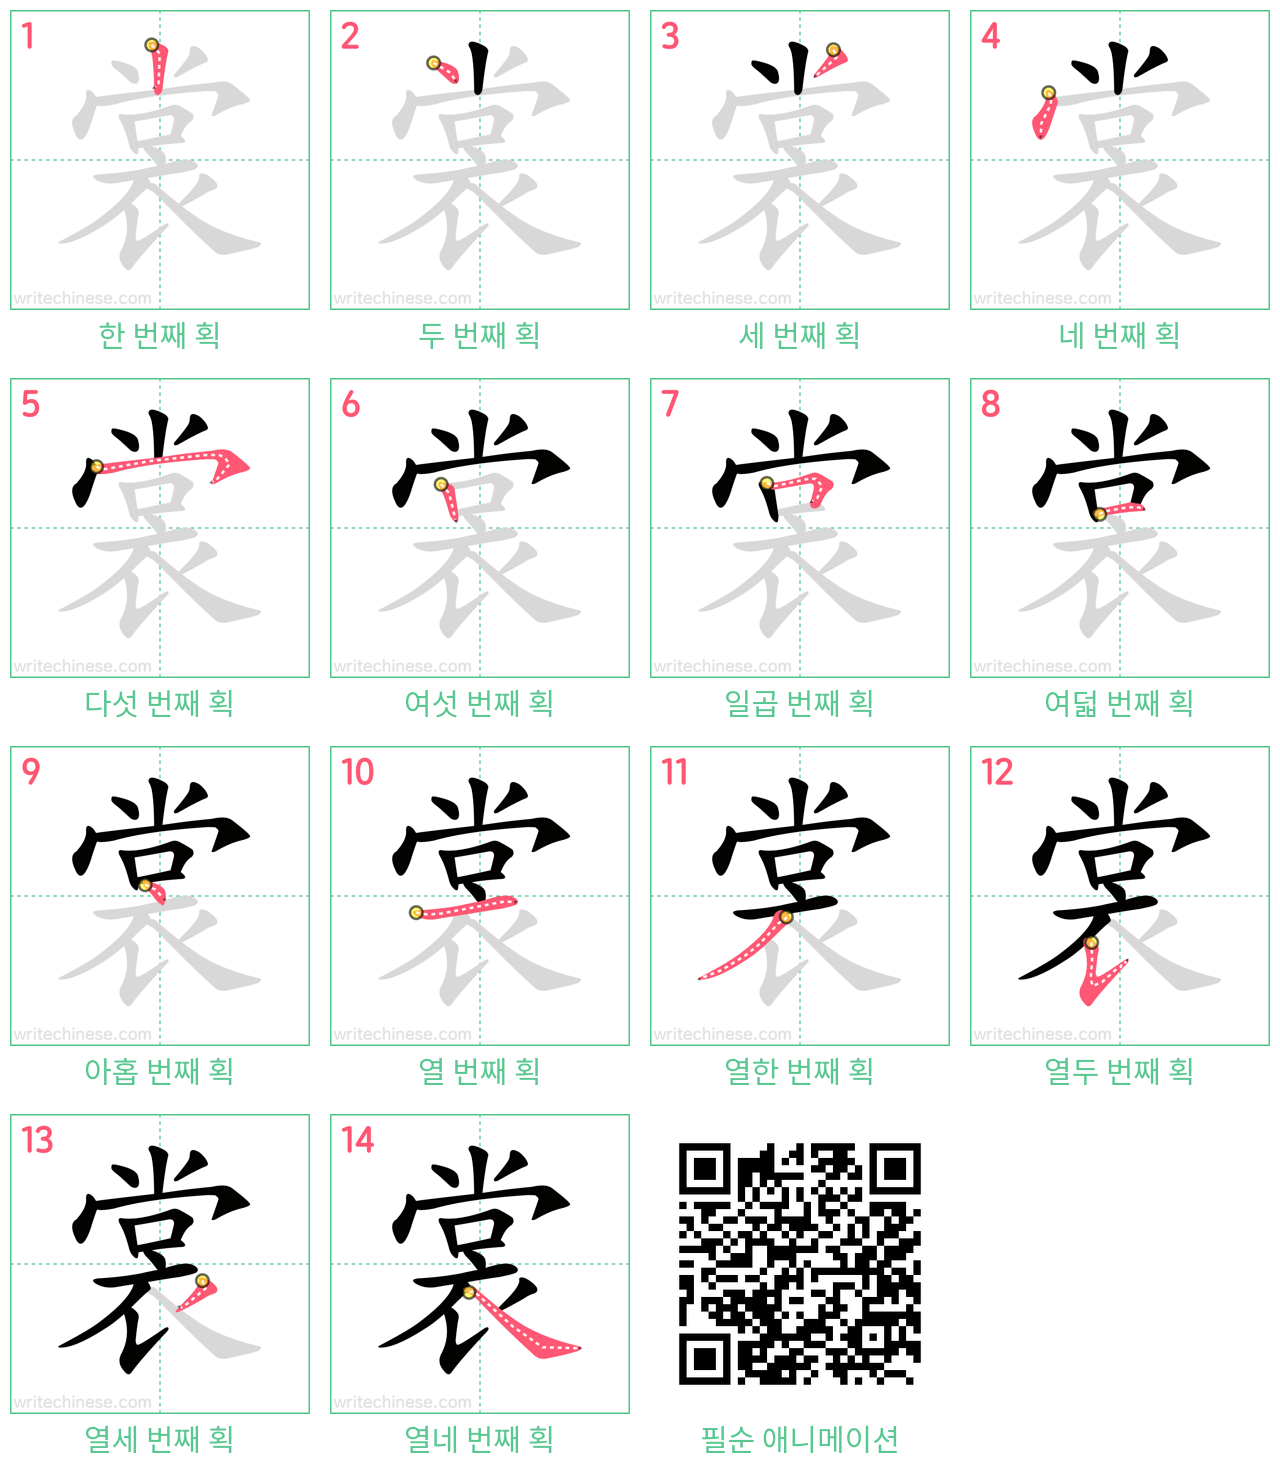 裳 step-by-step stroke order diagrams